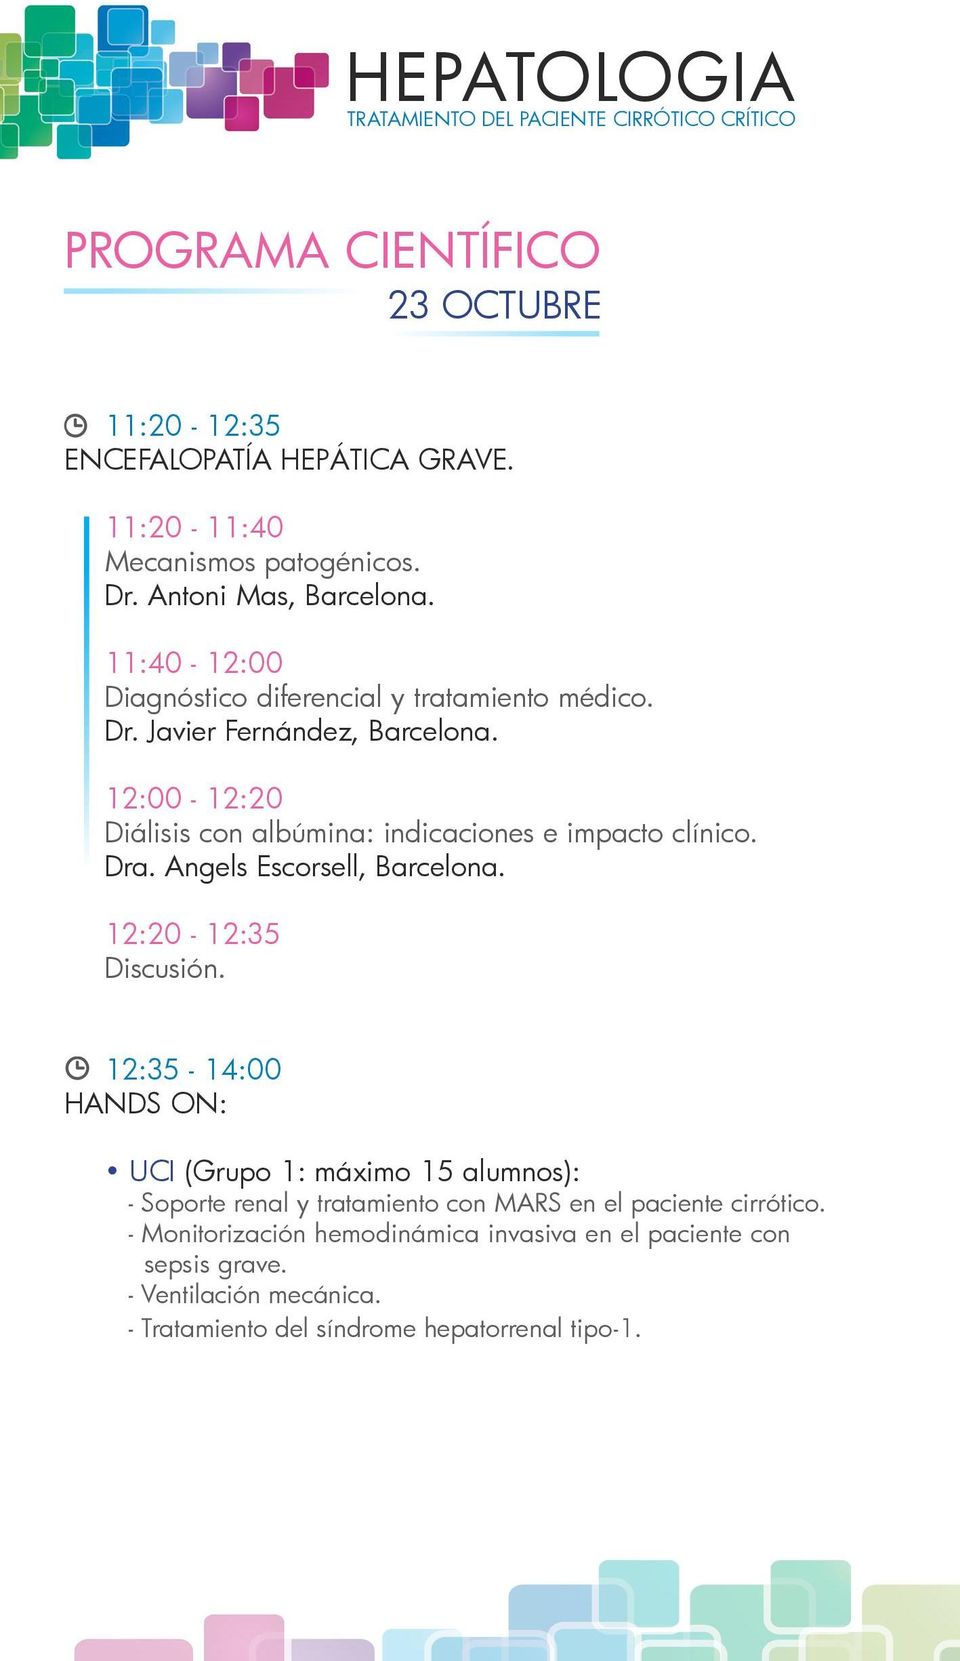 12:00-12:20 Diálisis con albúmina: indicaciones e impacto clínico. Dra. Angels Escorsell, Barcelona. 12:20-12:35 Discusión.